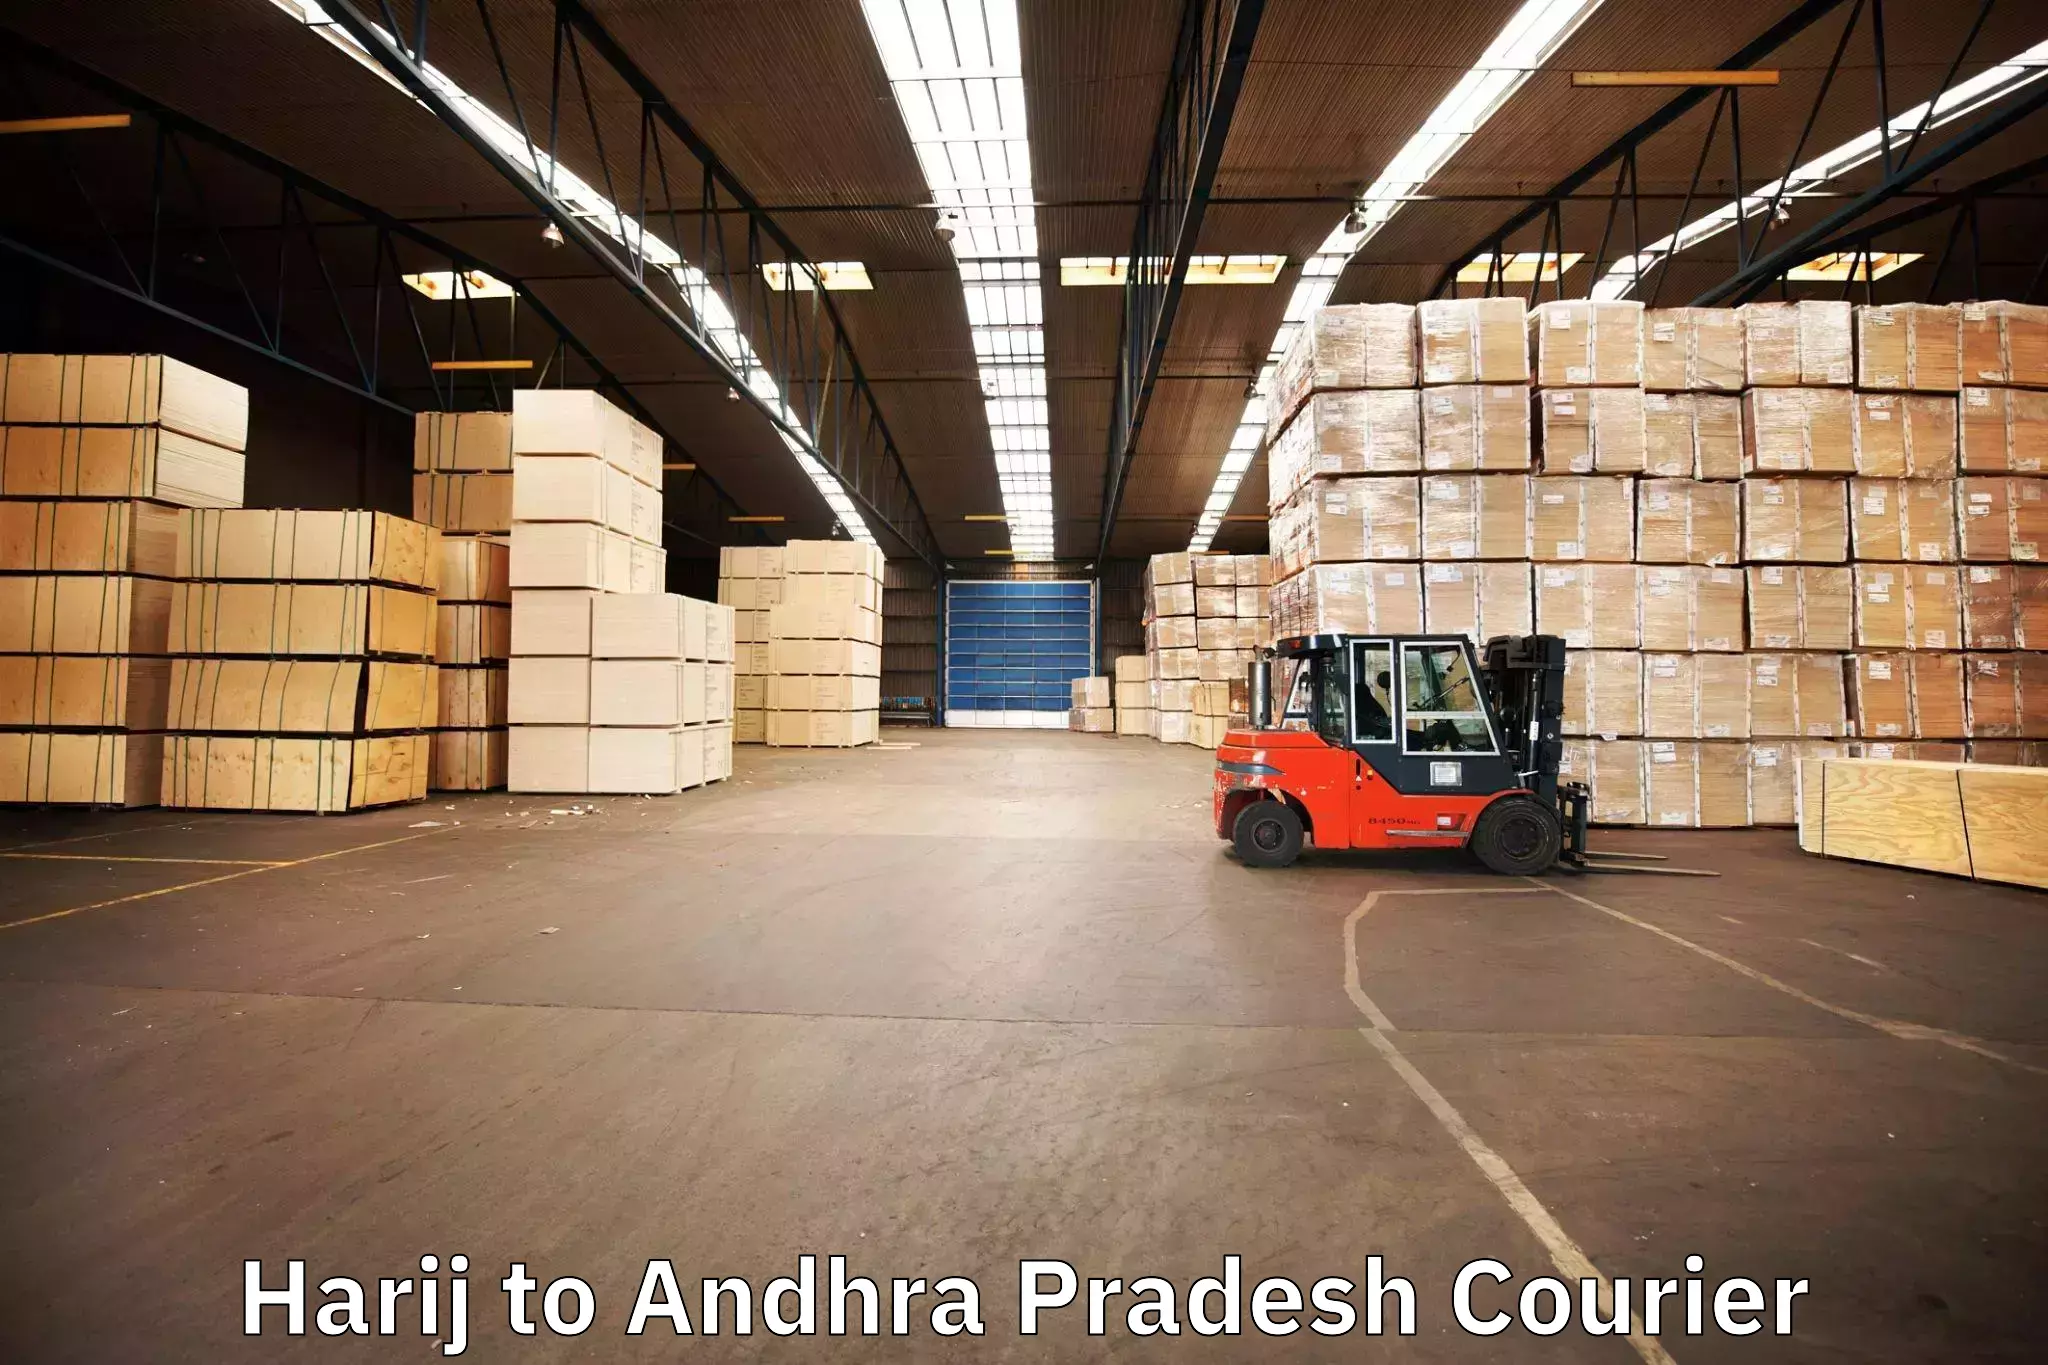 Expert goods movers Harij to Visakhapatnam